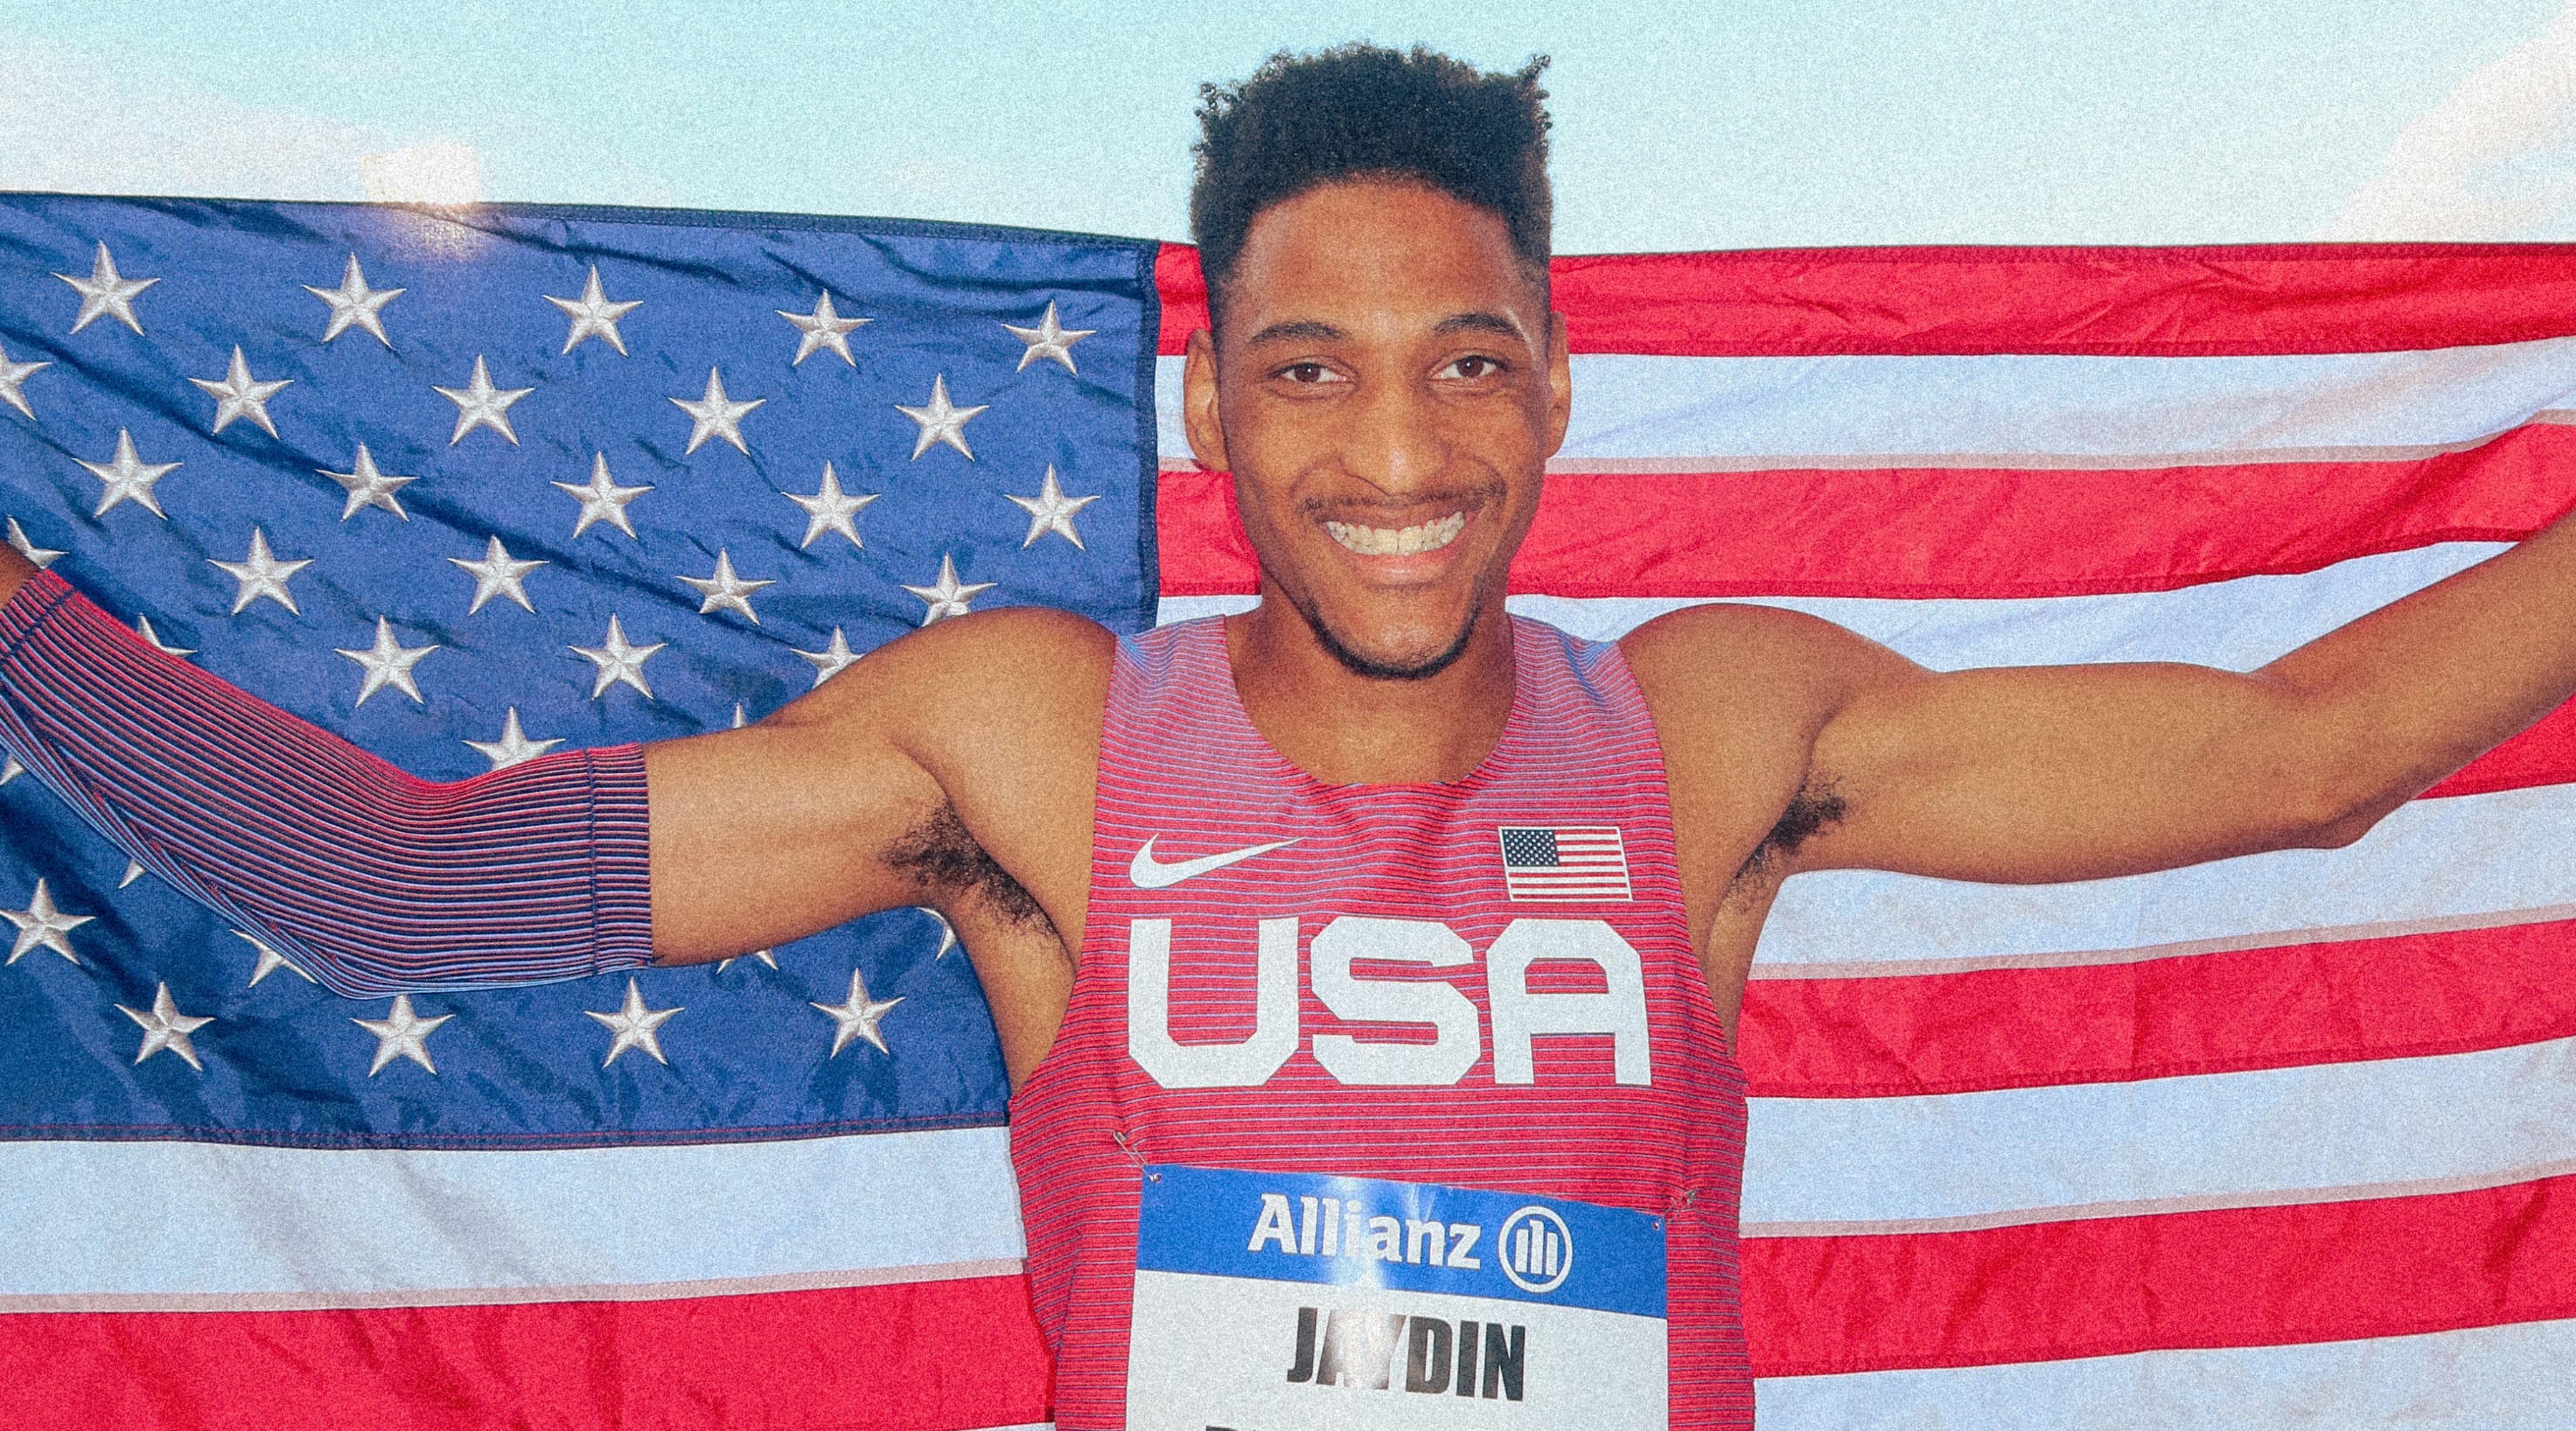 Jaydin Blackwell celebrates with the US Flag